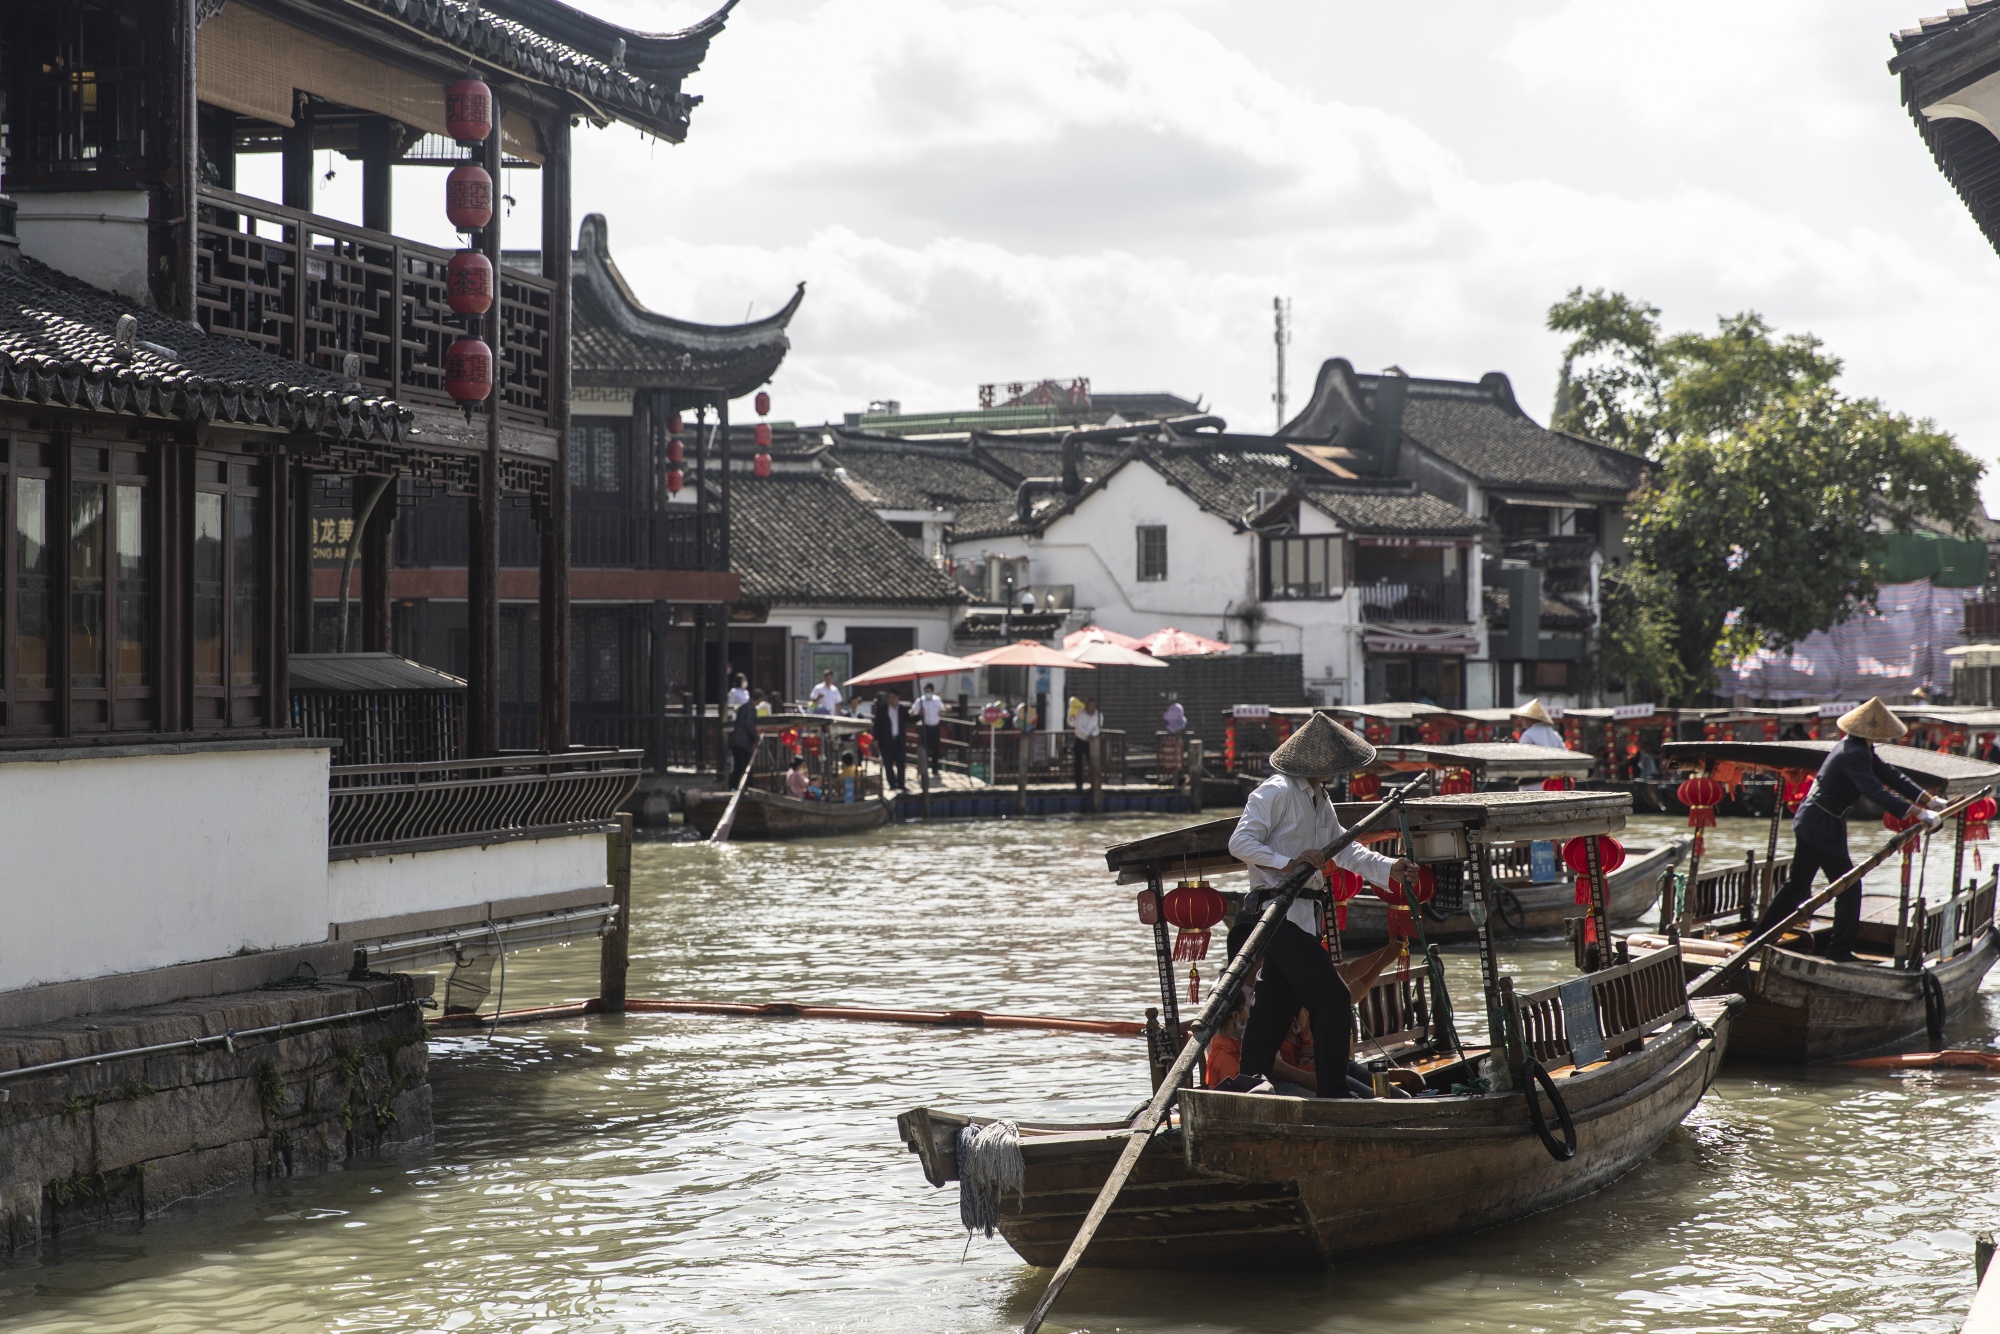 Boats navigate the canals of the Zhujiajiao water village in Qingpu.